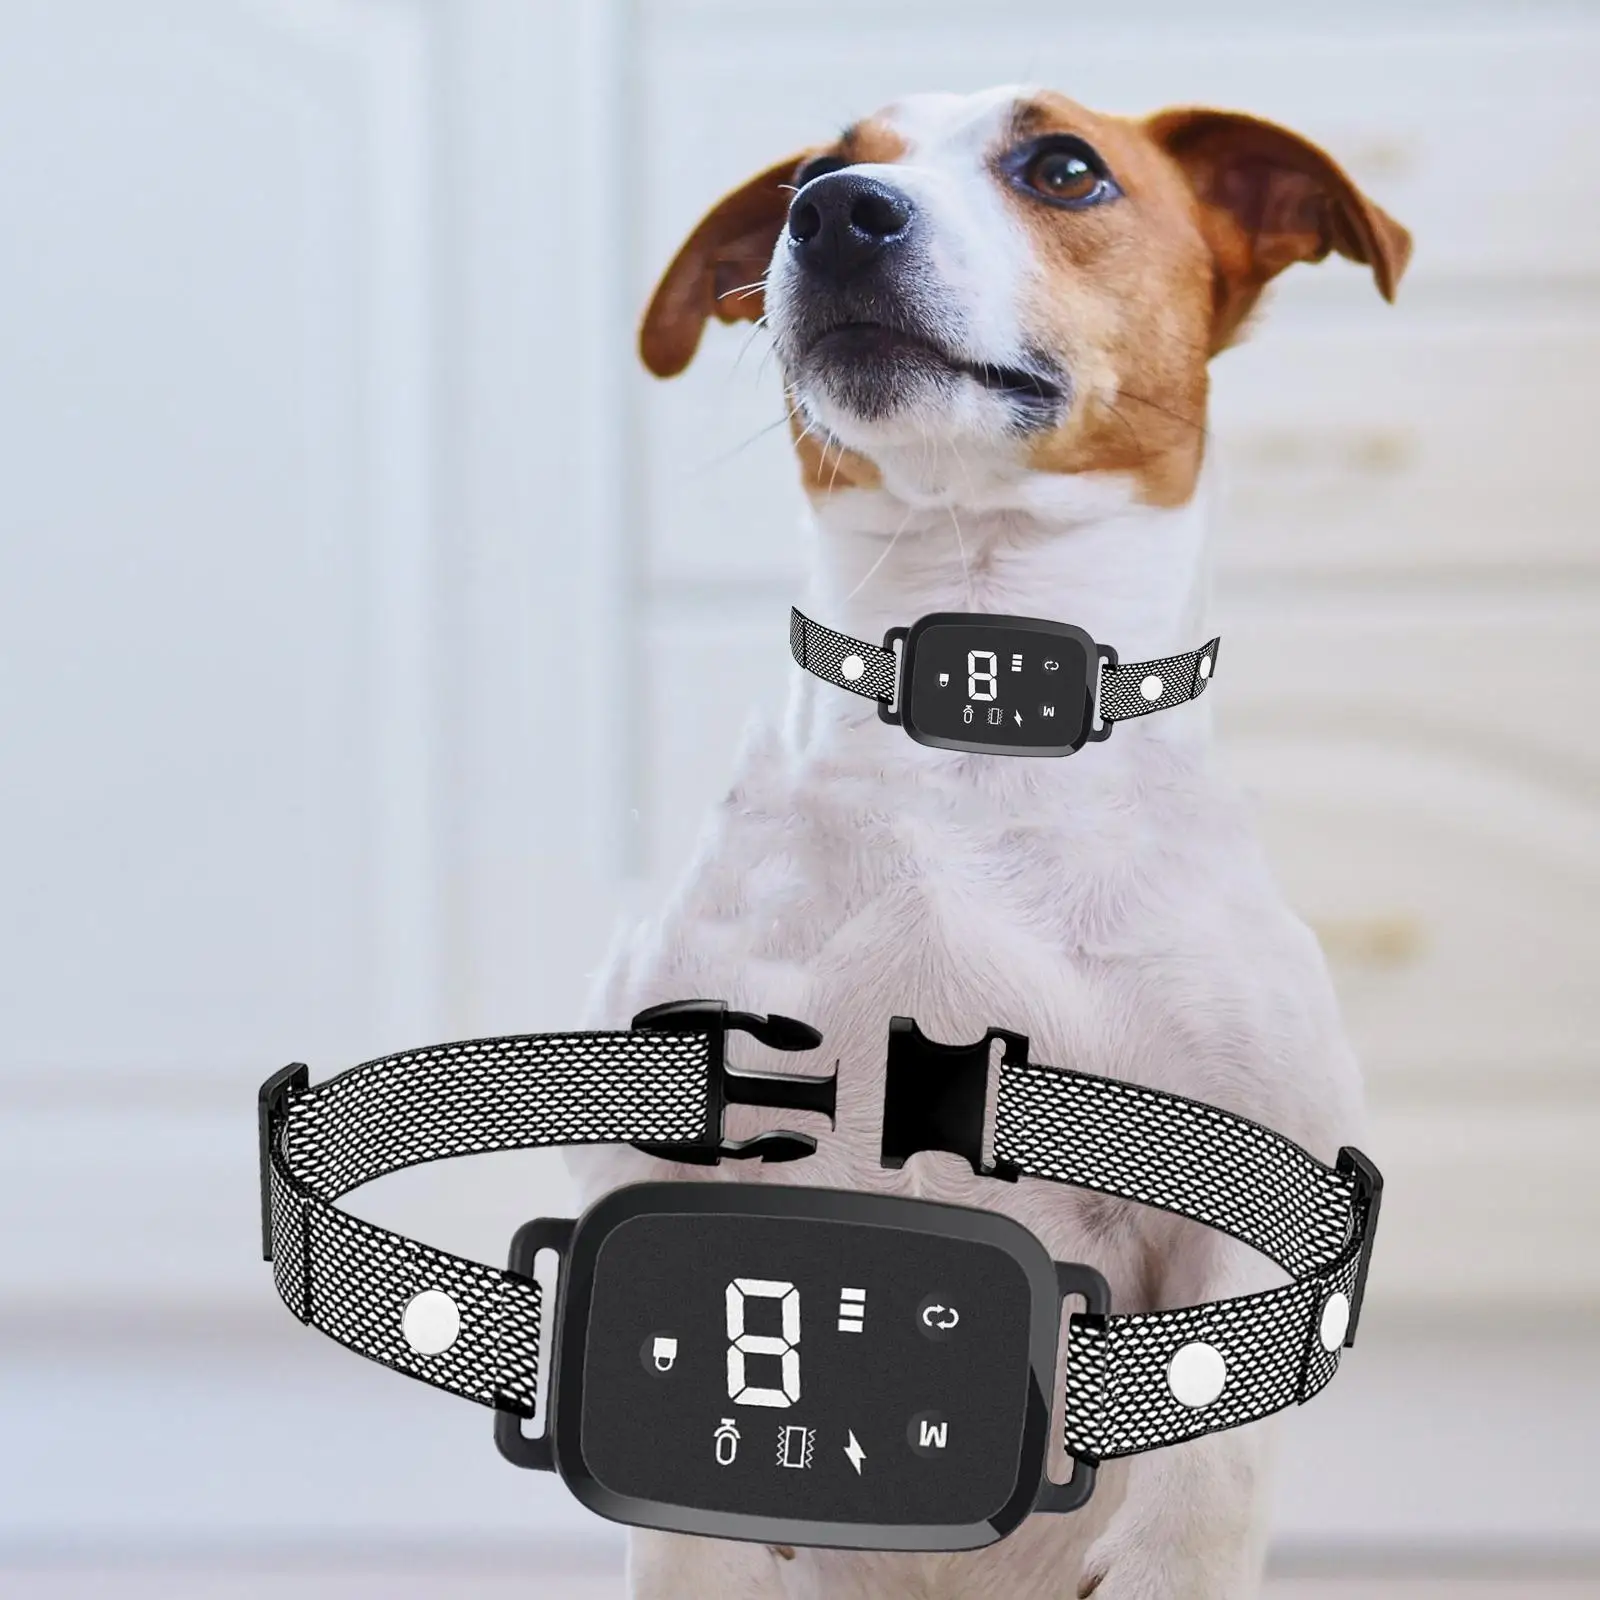 Dog Bark Collar Puppy LED Indicator Dog Training Device Dog Training Collar for Running Living Room Walking Household Indoors